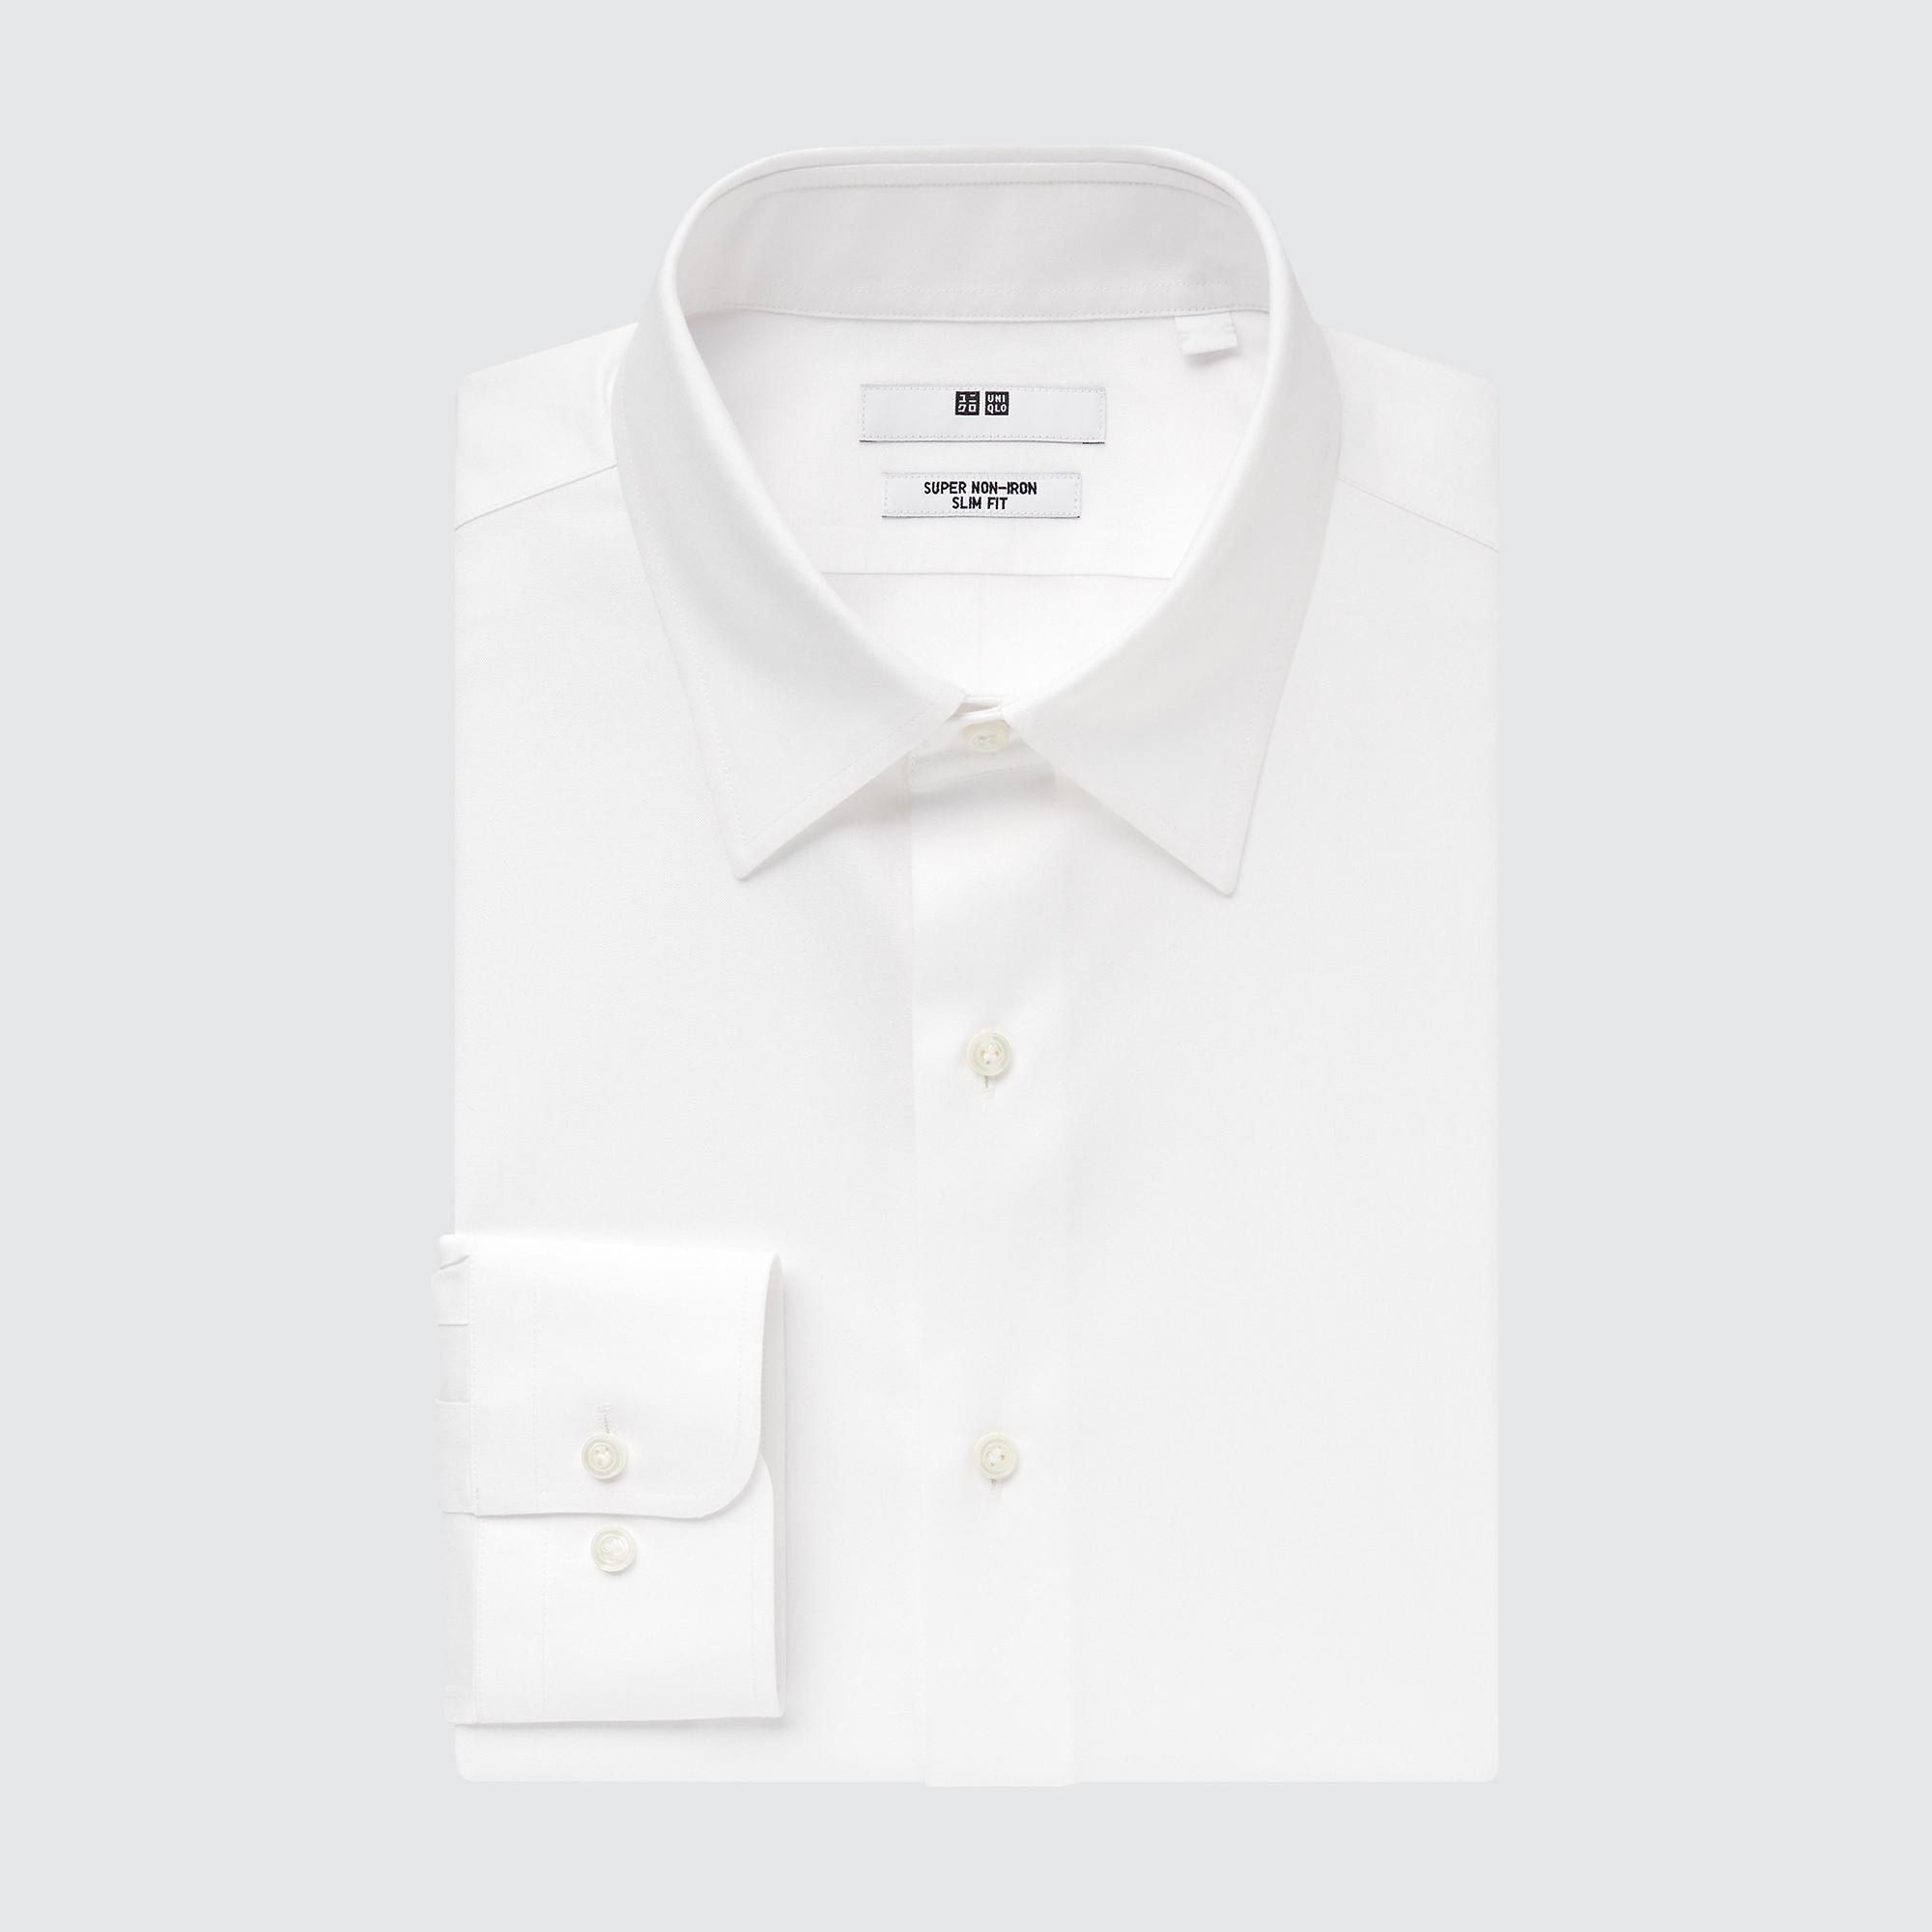 Рубашка UNIQLO Super Non-iron Slim Fit, белый рубашка zara non iron stretch белый